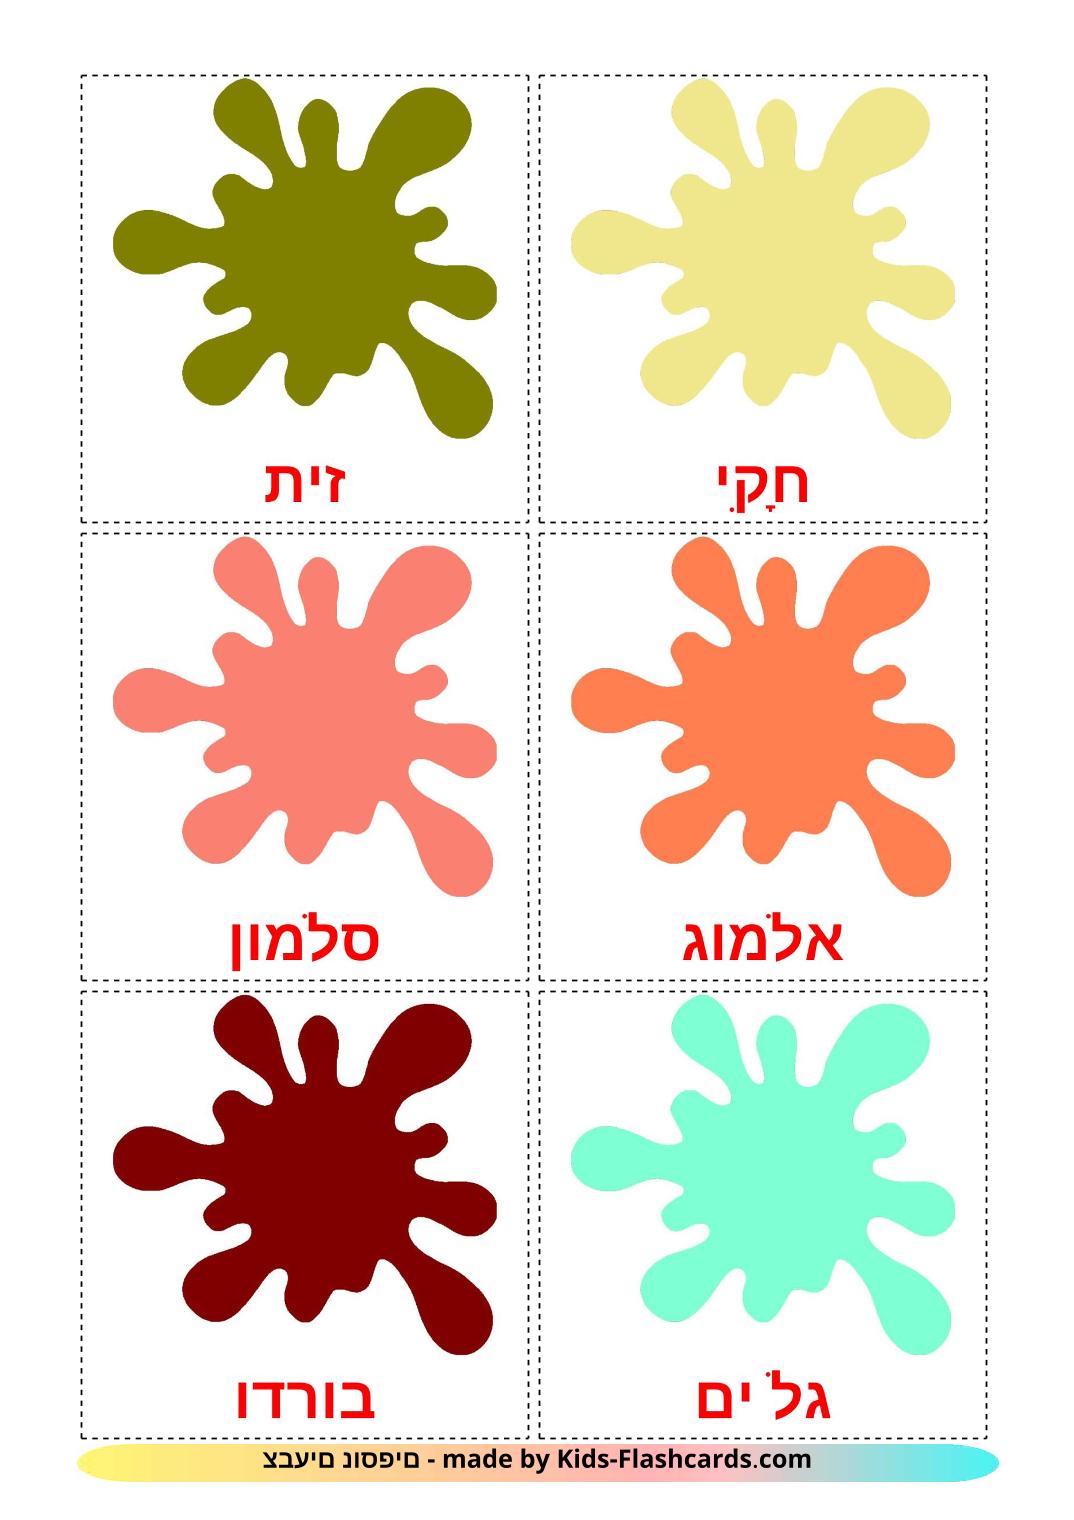 Cores secondarias - 20 Flashcards hebraicoes gratuitos para impressão